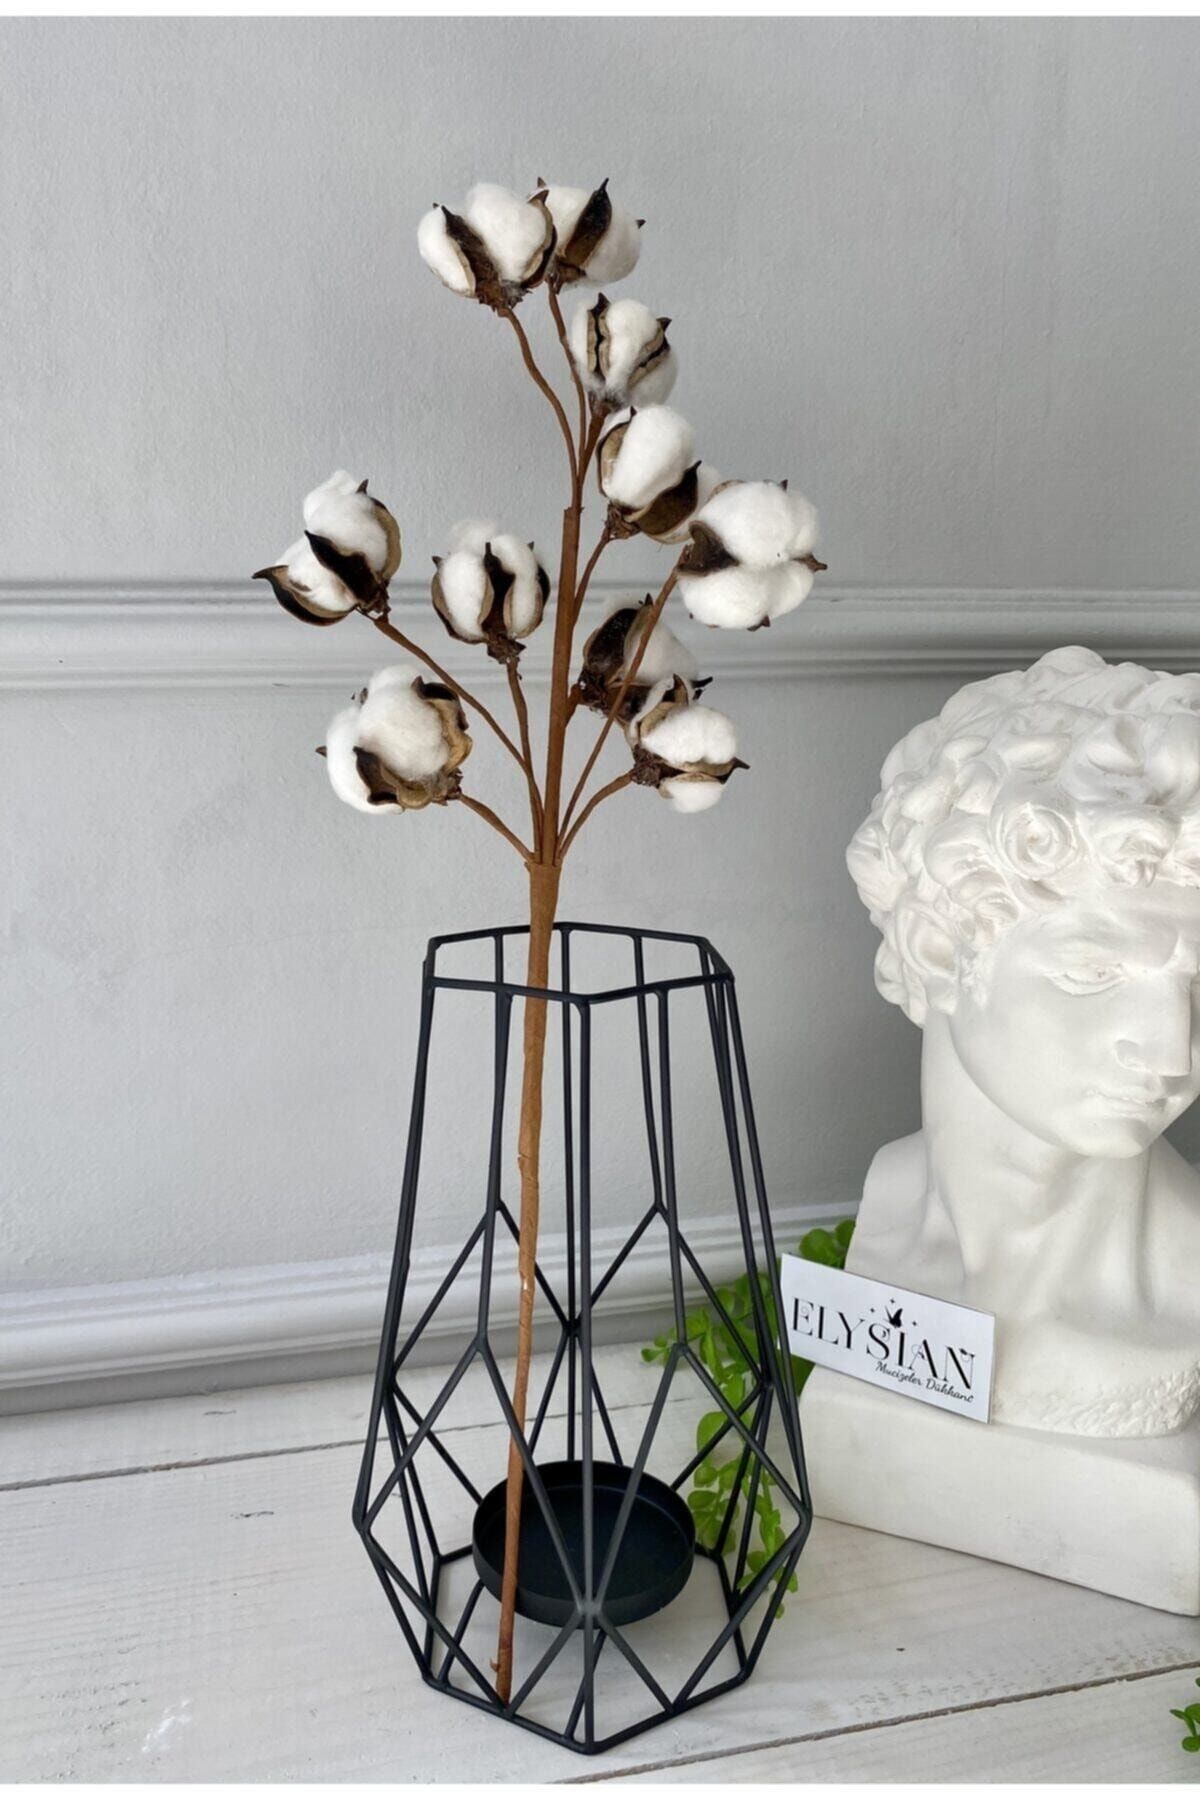 Aker Hediyelik Doğal Pamuk Dalları 1 Dal 10lu Pamuklar Dekoratif Beyaz Yapay Çiçek Minimal Dekor